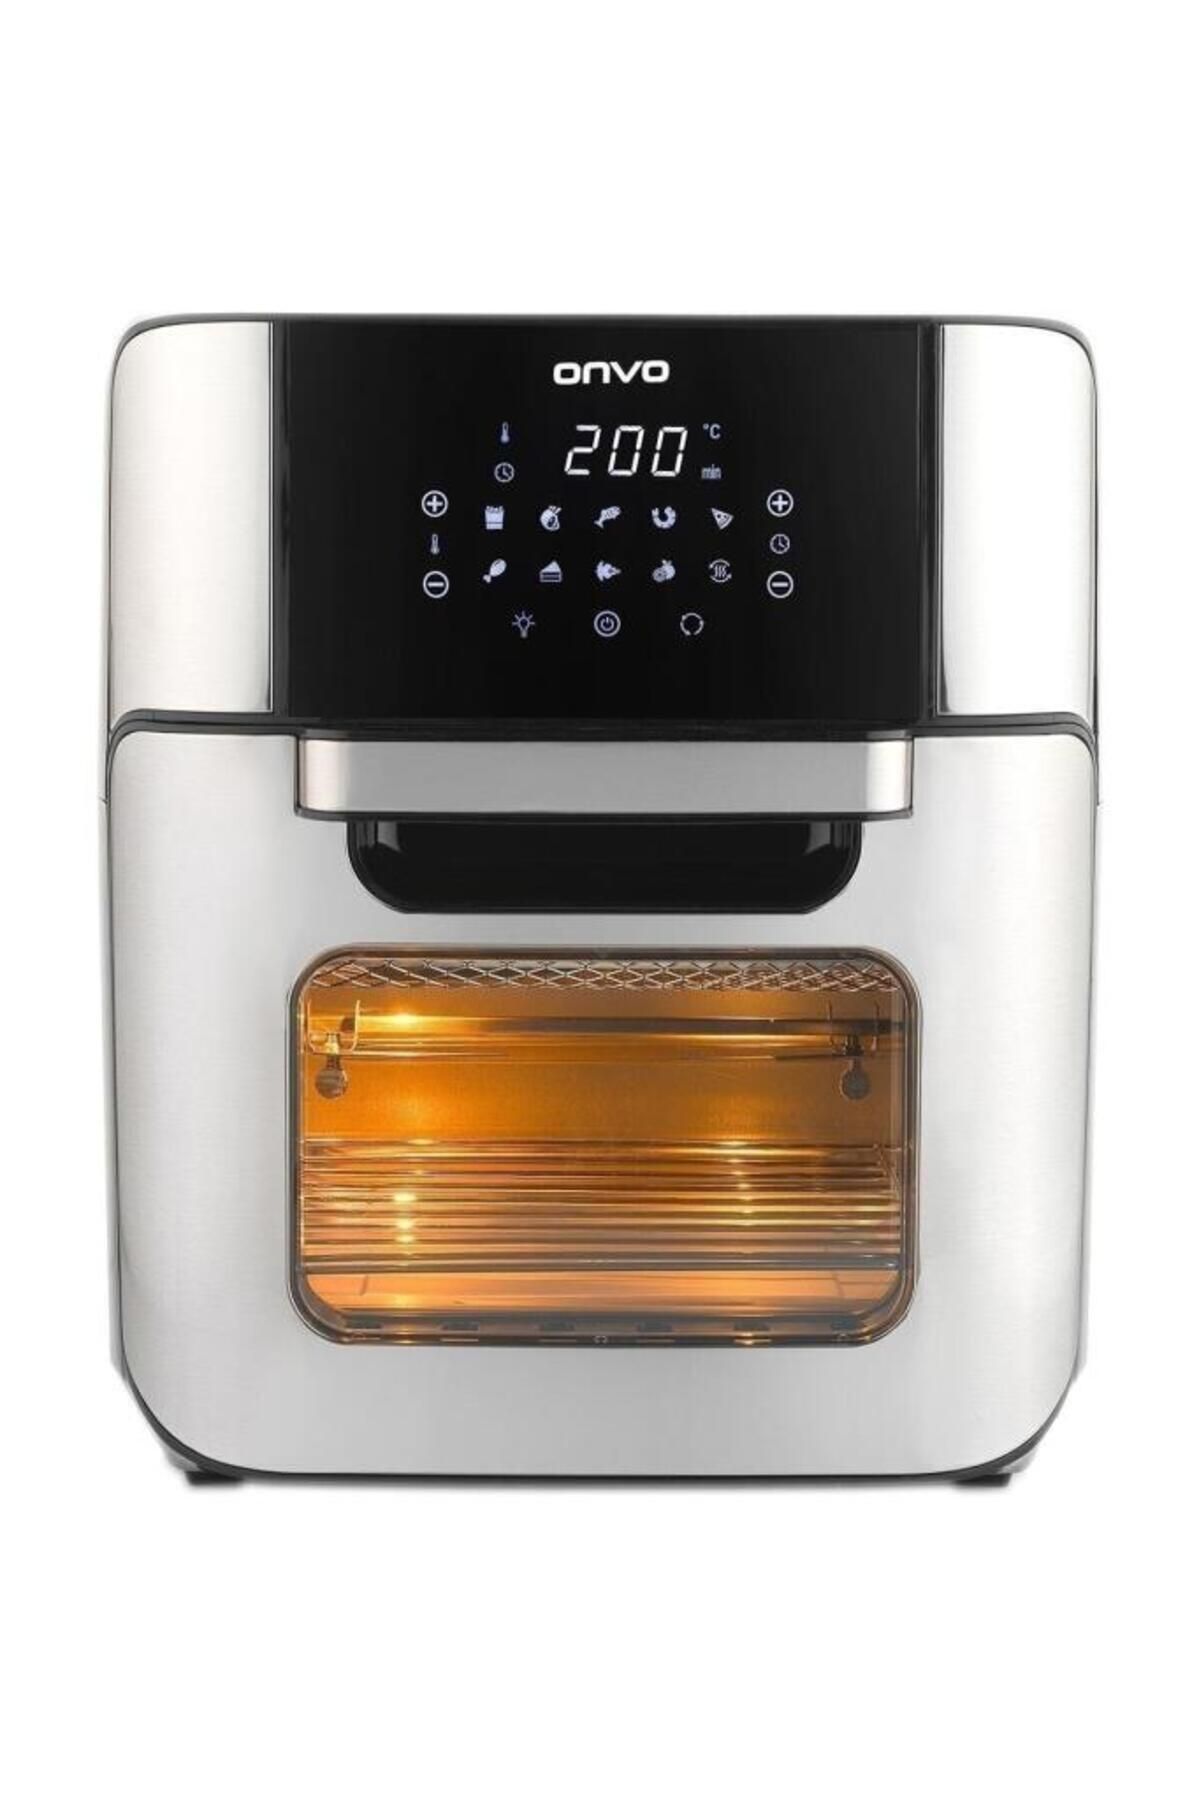 ONVO Ovfry09 Oven Airfryer 12 Litre Multifonksiyonel Sıcak Hava Fritözü & Fırın